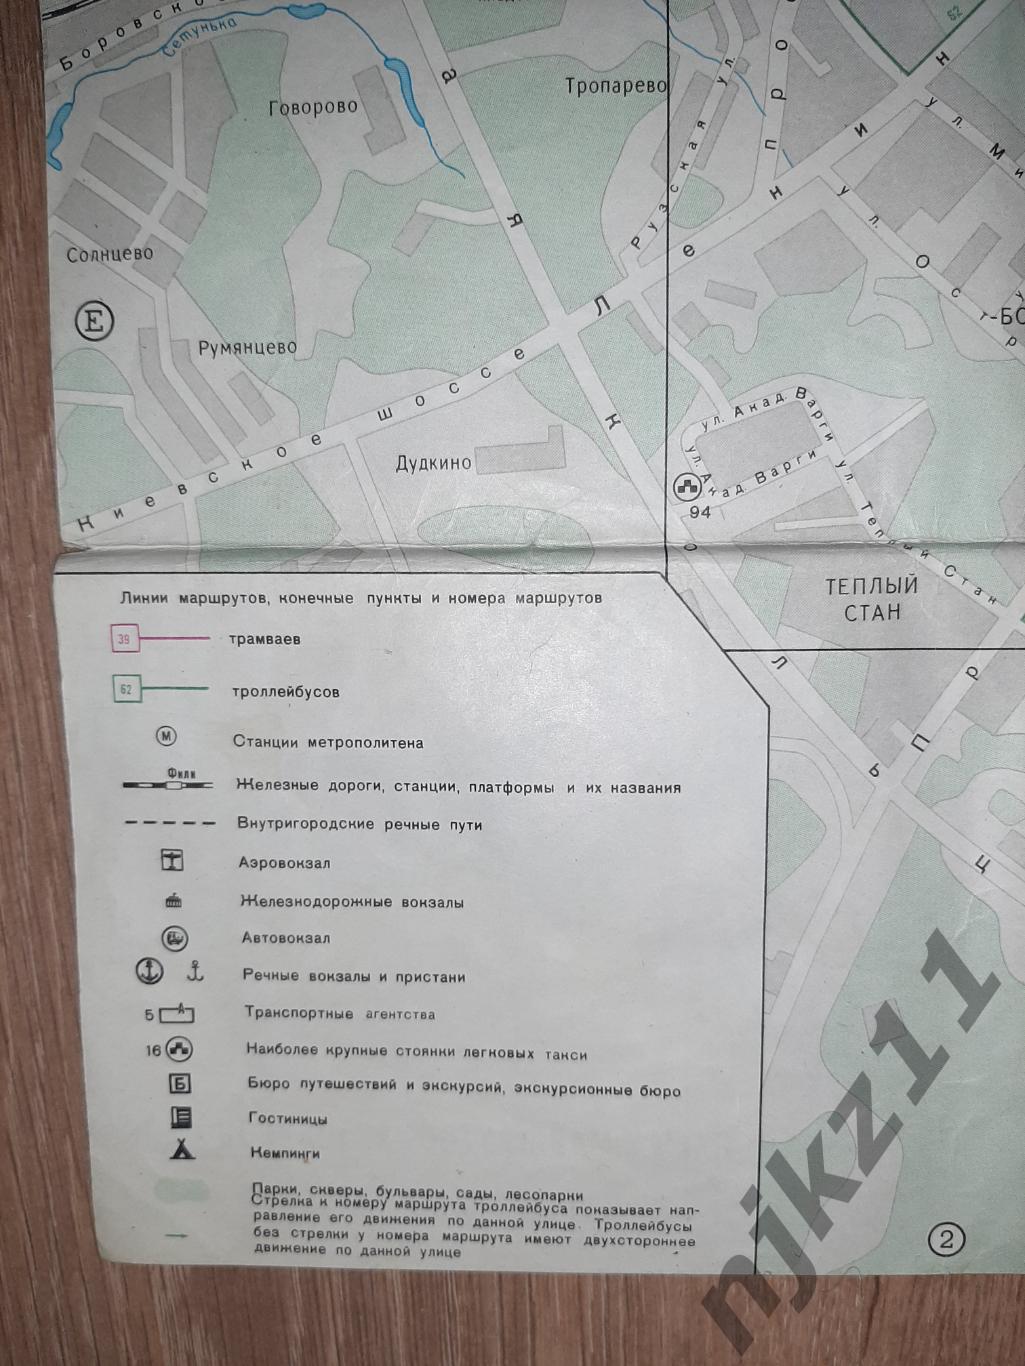 Карта Москва 1980+Зеленоград+схема движения пассажирского транспорта 79-80г.г. 6